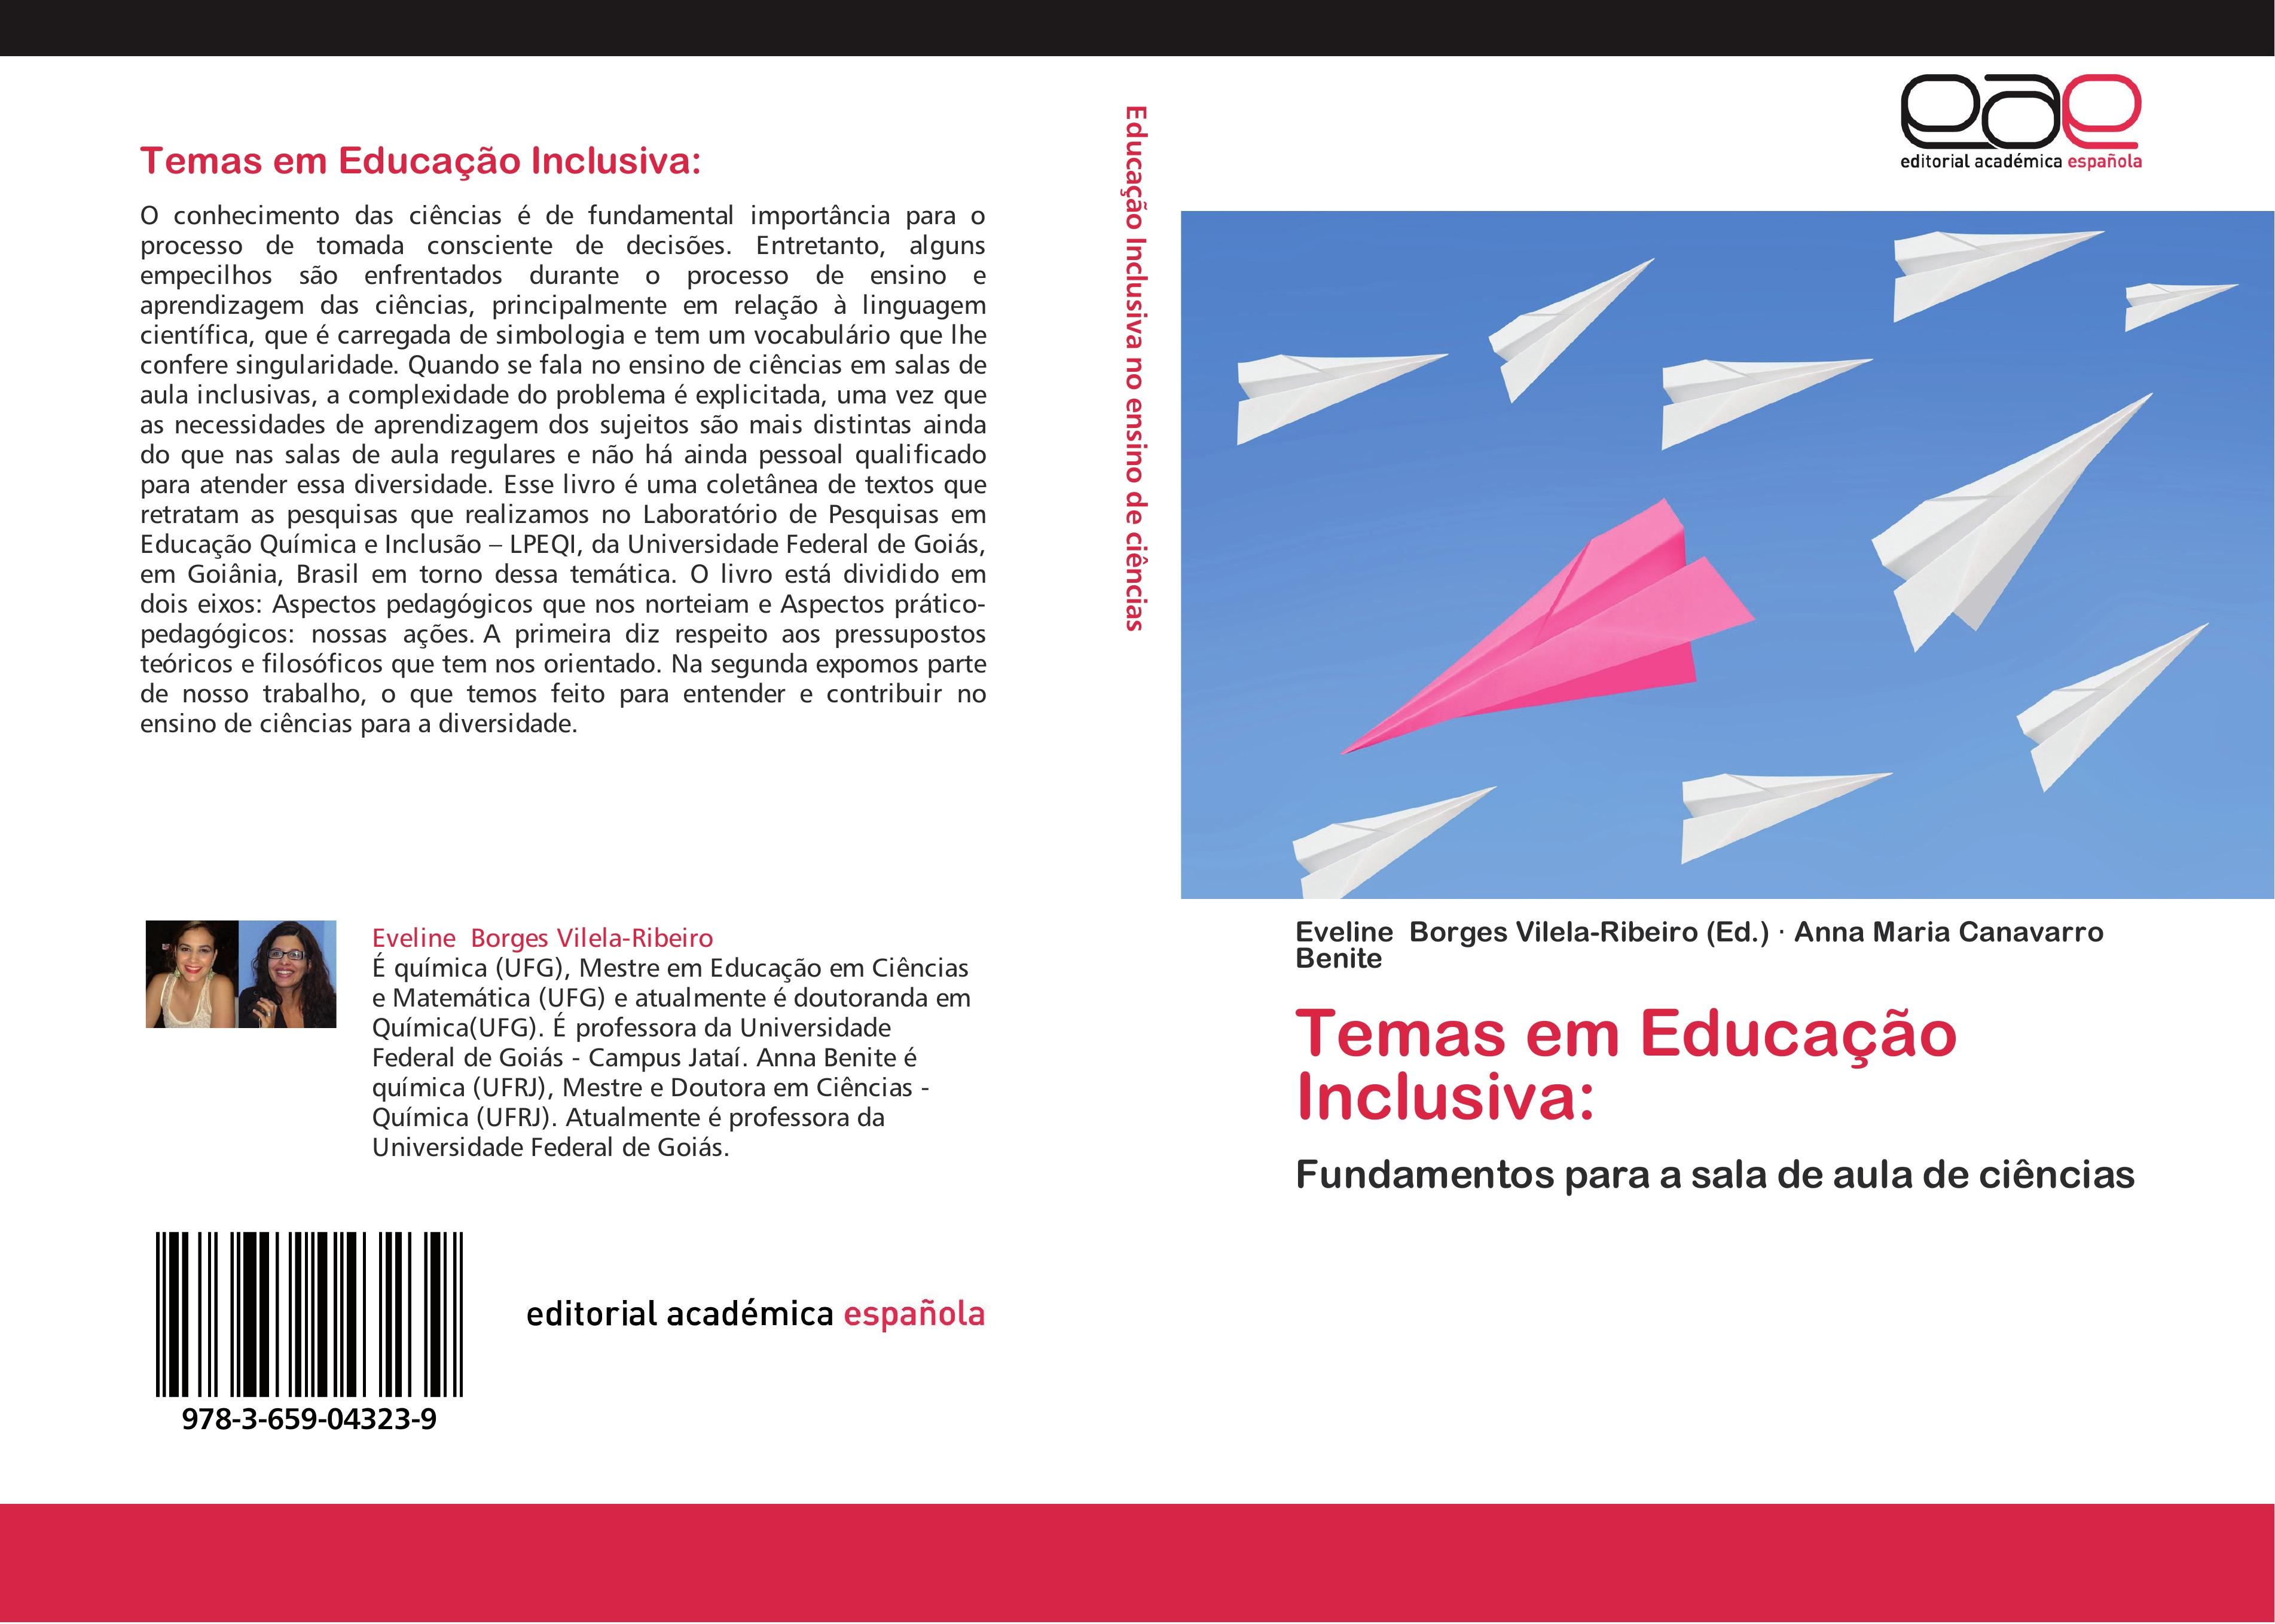 Temas em Educação Inclusiva: / Fundamentos para a sala de aula de ciências / Eveline Borges Vilela-Ribeiro (u. a.) / Taschenbuch / Paperback / 204 S. / Portugiesisch / 2012 / EAN 9783659043239 - Borges Vilela-Ribeiro, Eveline